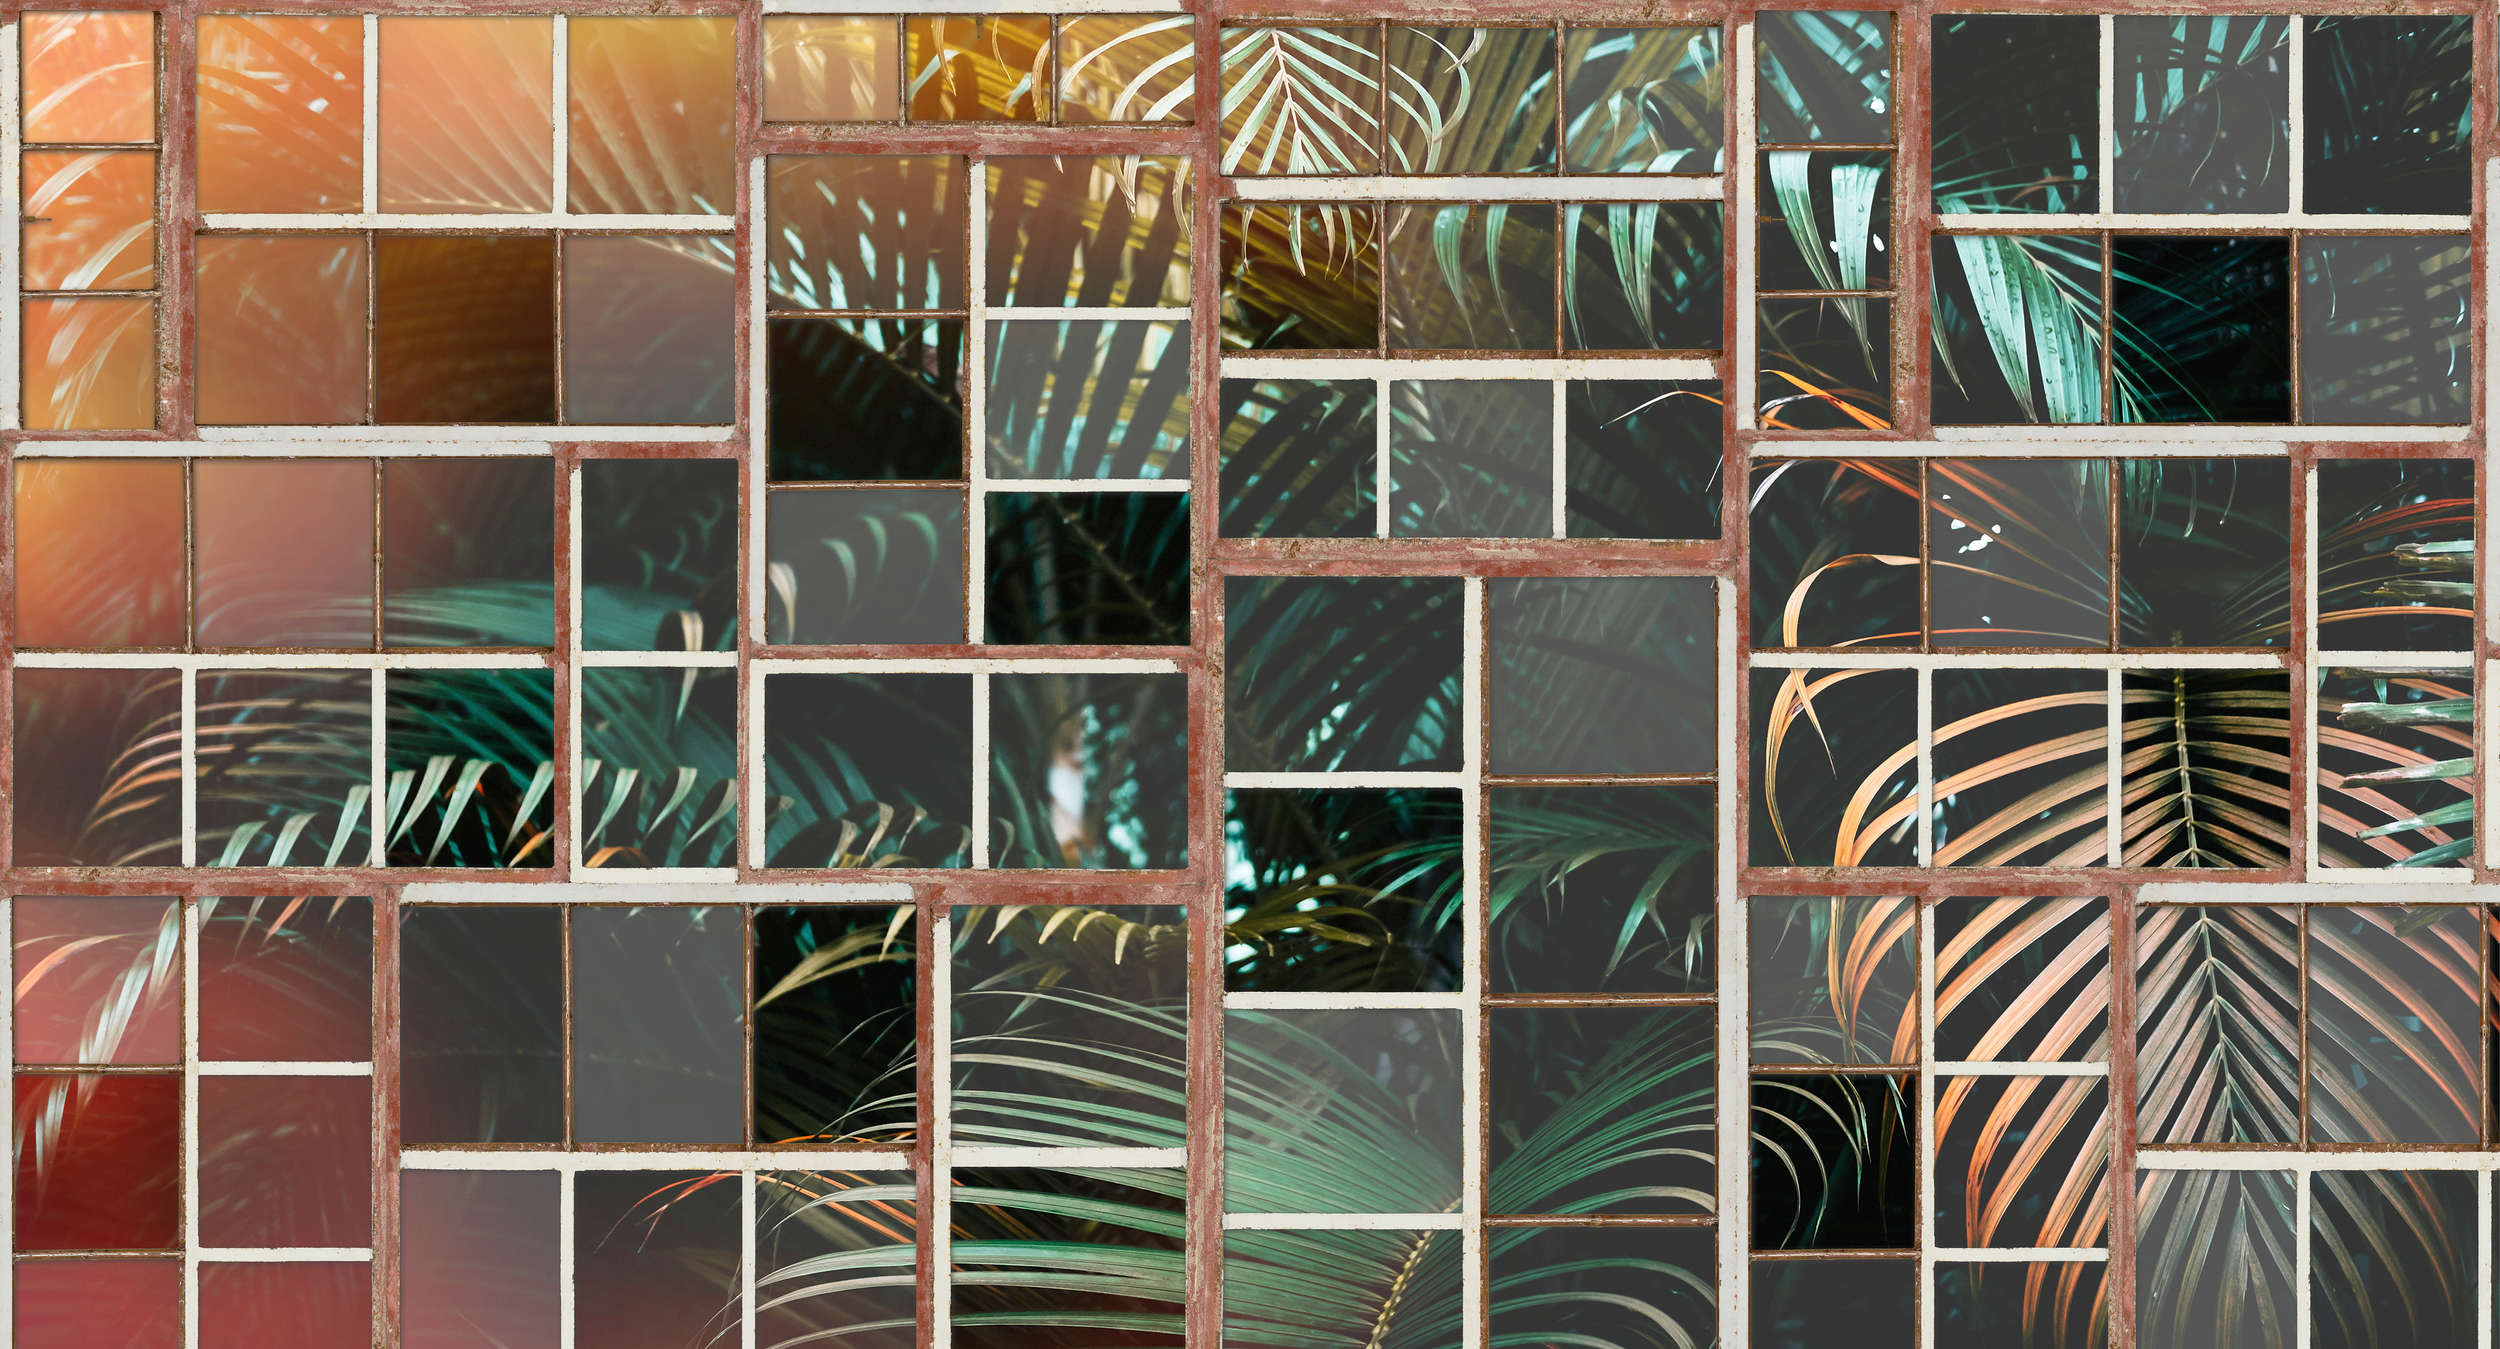             Fototapete mit Ausblick, Retro-Fenster & Farnen – Braun, Weiß, Grün
        